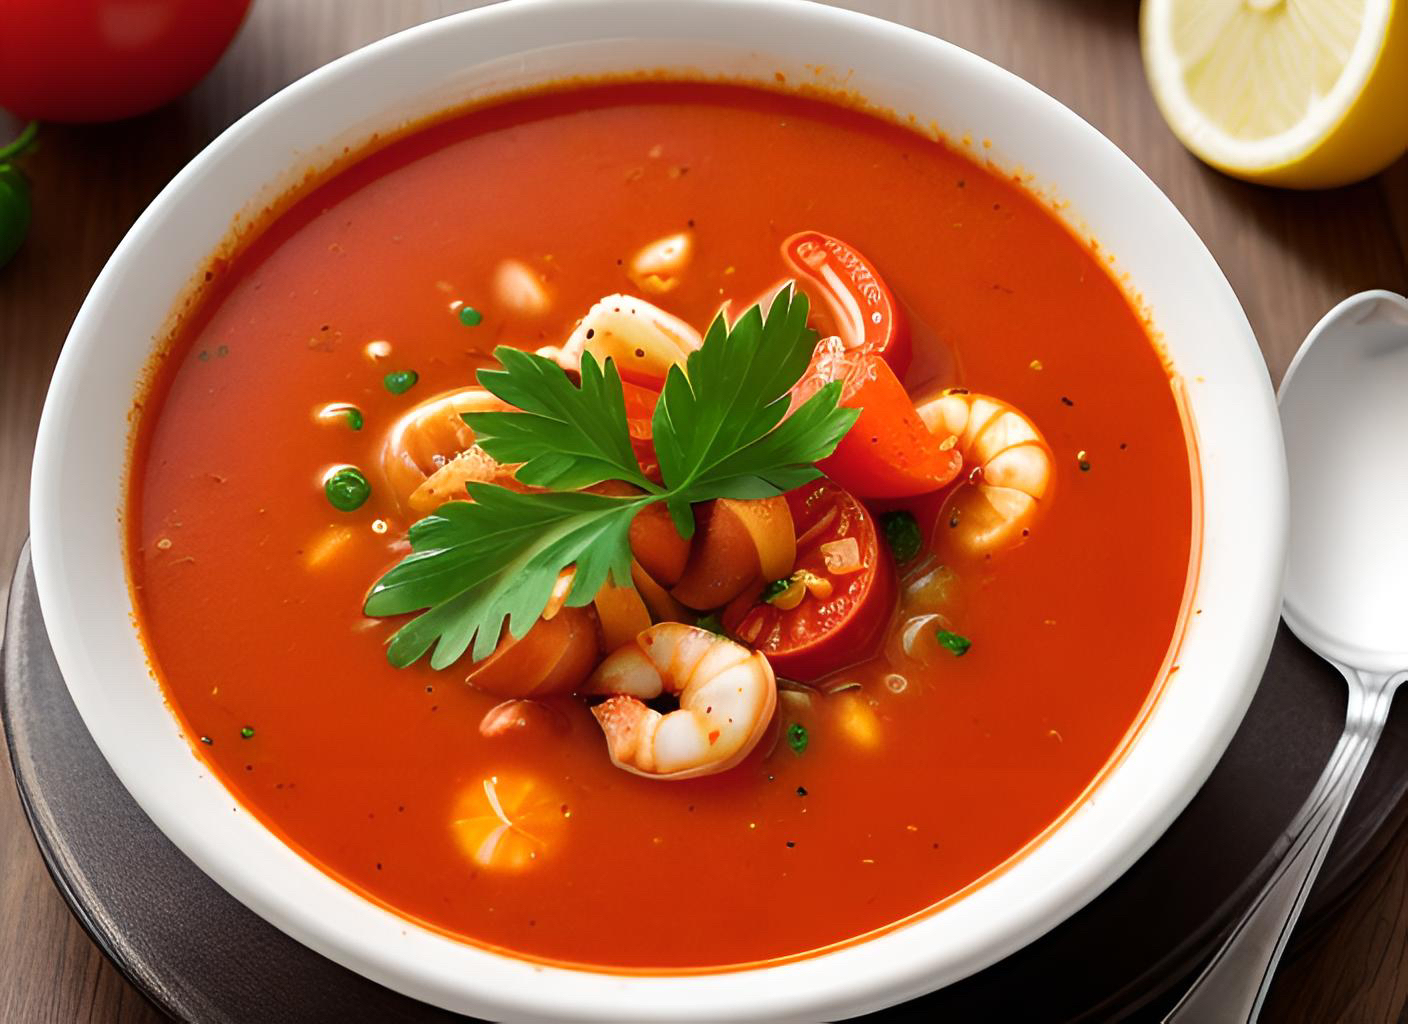 西班牙番茄海鲜汤,又称为西班牙海鲜番茄汤,是一道以番茄和海鲜为主要